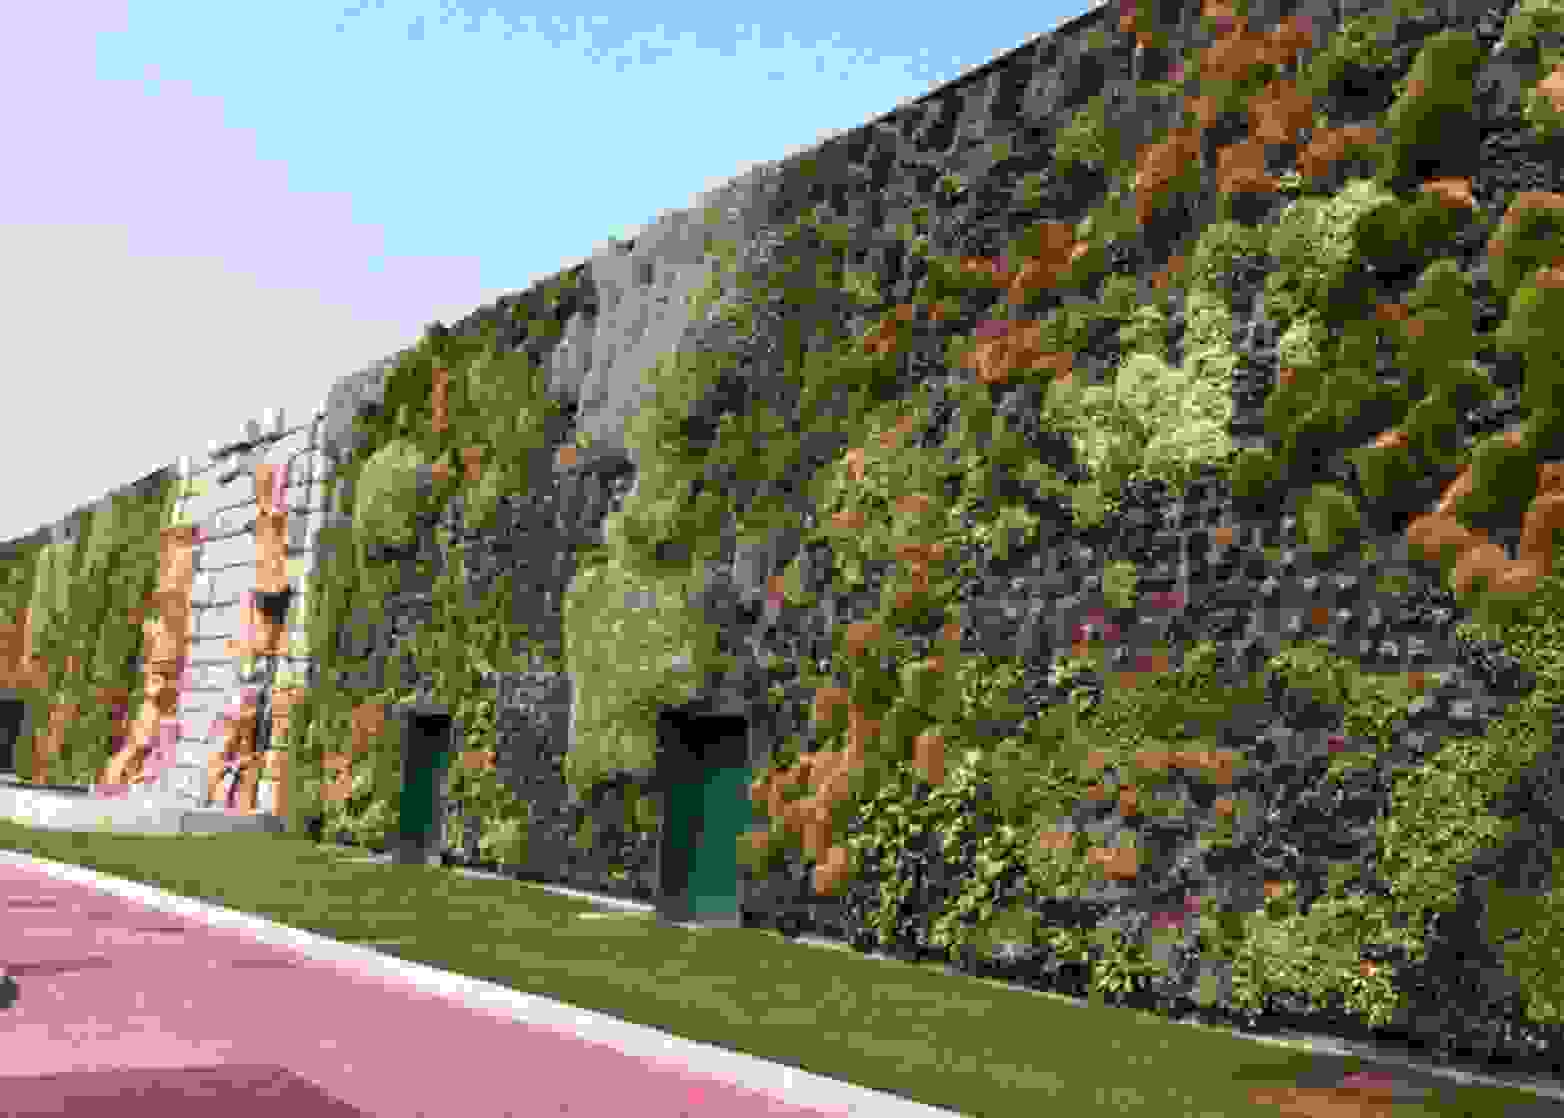 giardini verticali fiordaliso rozzano